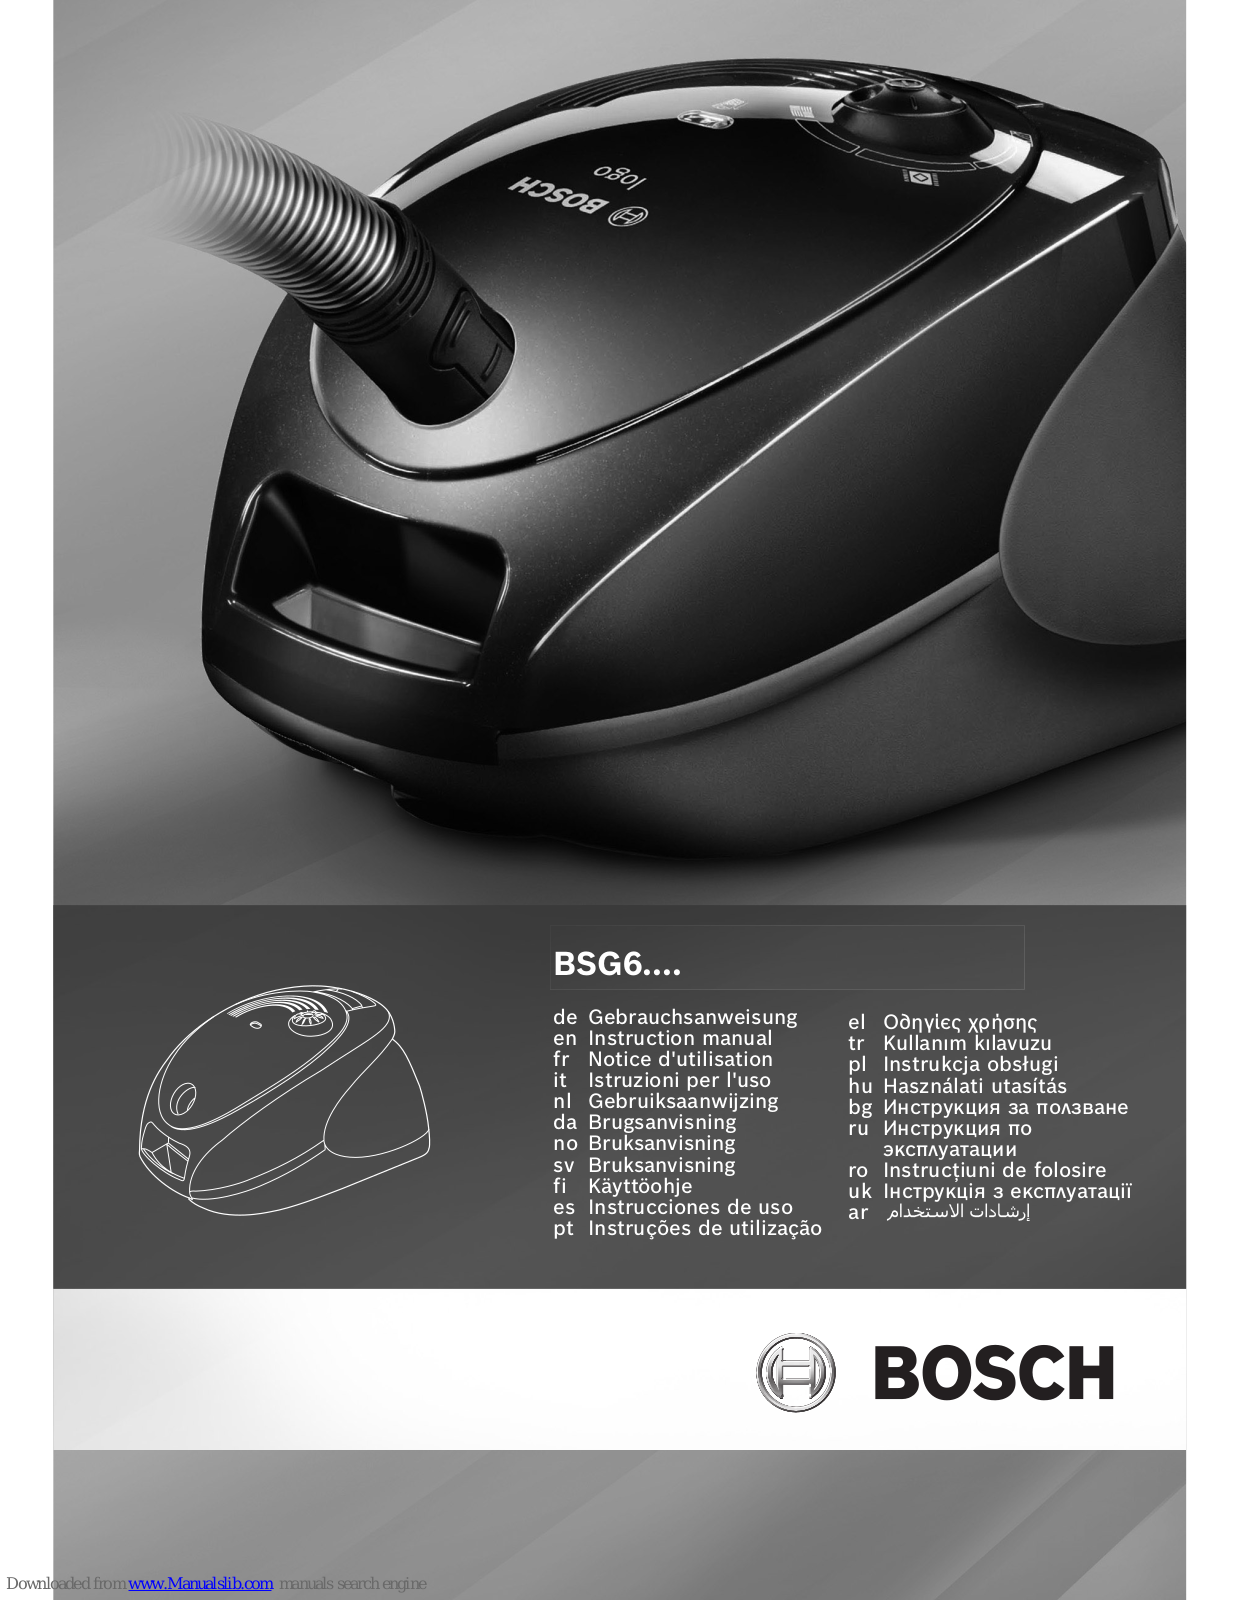 Bosch BSG6 Instruction Manual